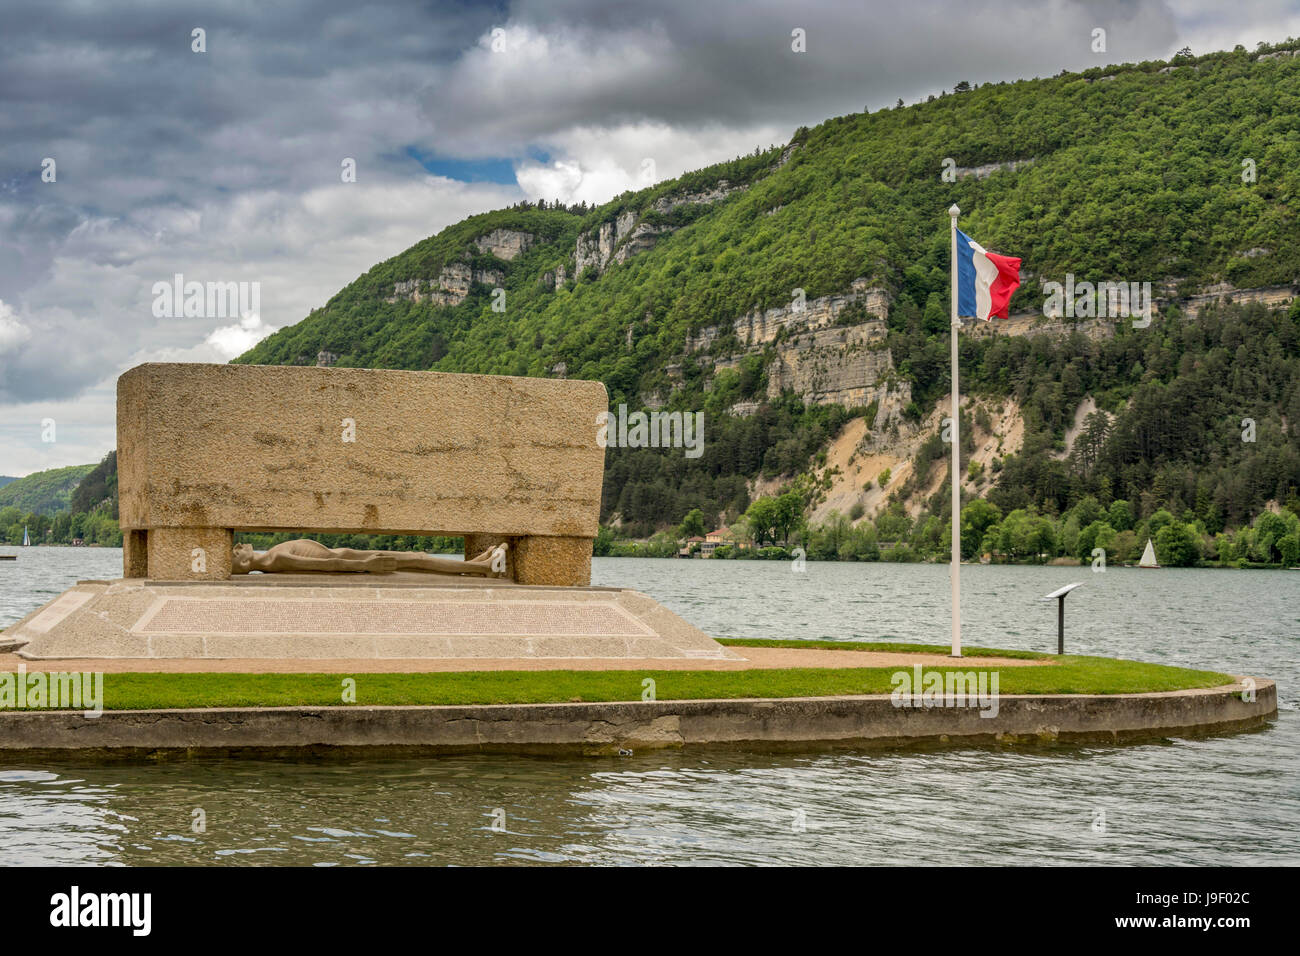 Kriegerdenkmal; Das Denkmal für die Deportierten von Ain. Nantua. Ain. Frankreich Stockfoto